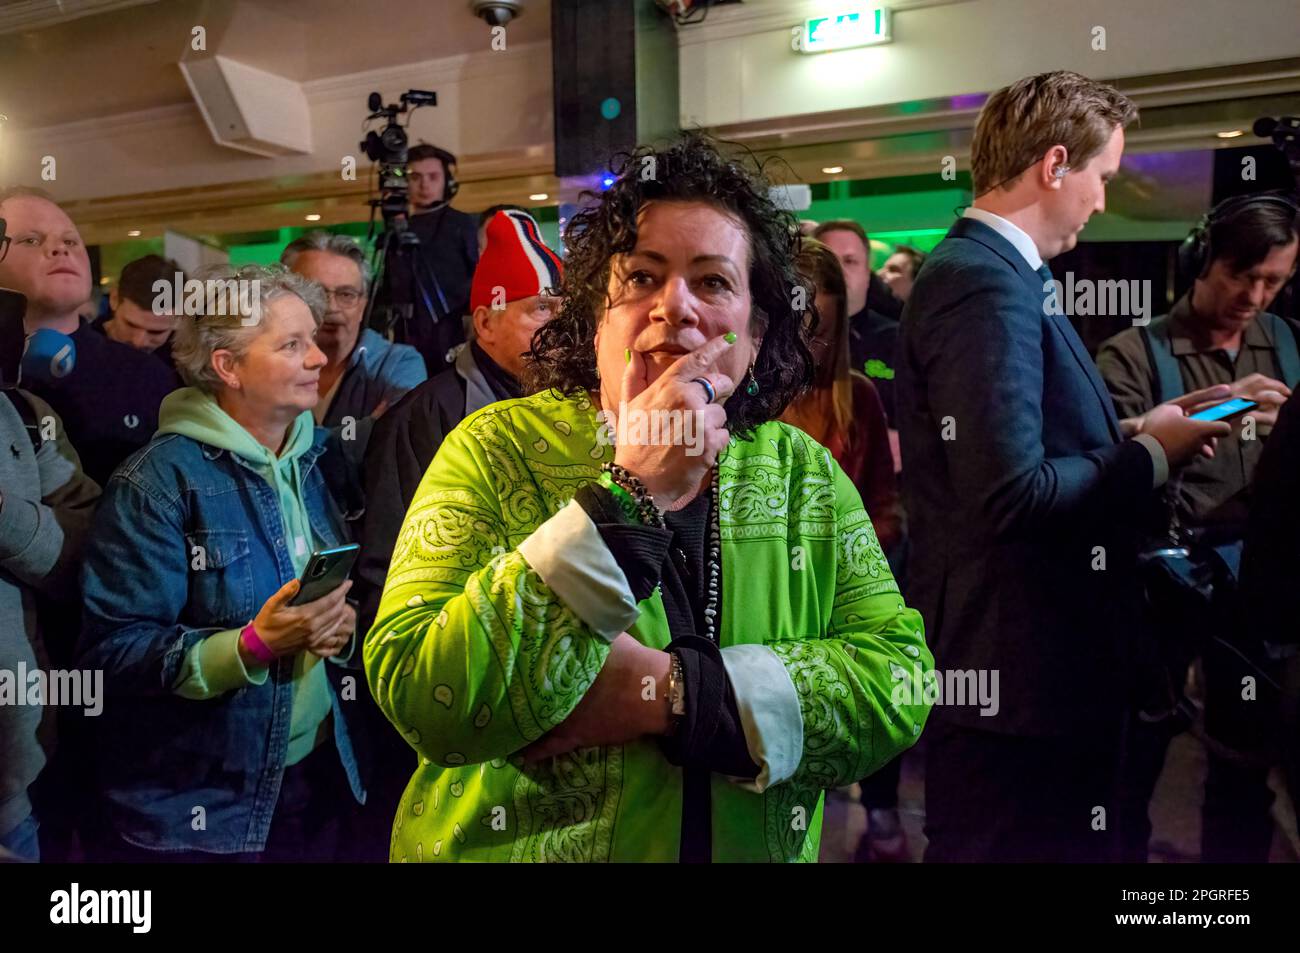 BATHMEN, NIEDERLANDE - 15. MÄRZ 2023: Politikerin Caroline van der Plas in einem ernsten Moment, nachdem sie die Ergebnisse der Provinzwahlen gehört hatte Stockfoto